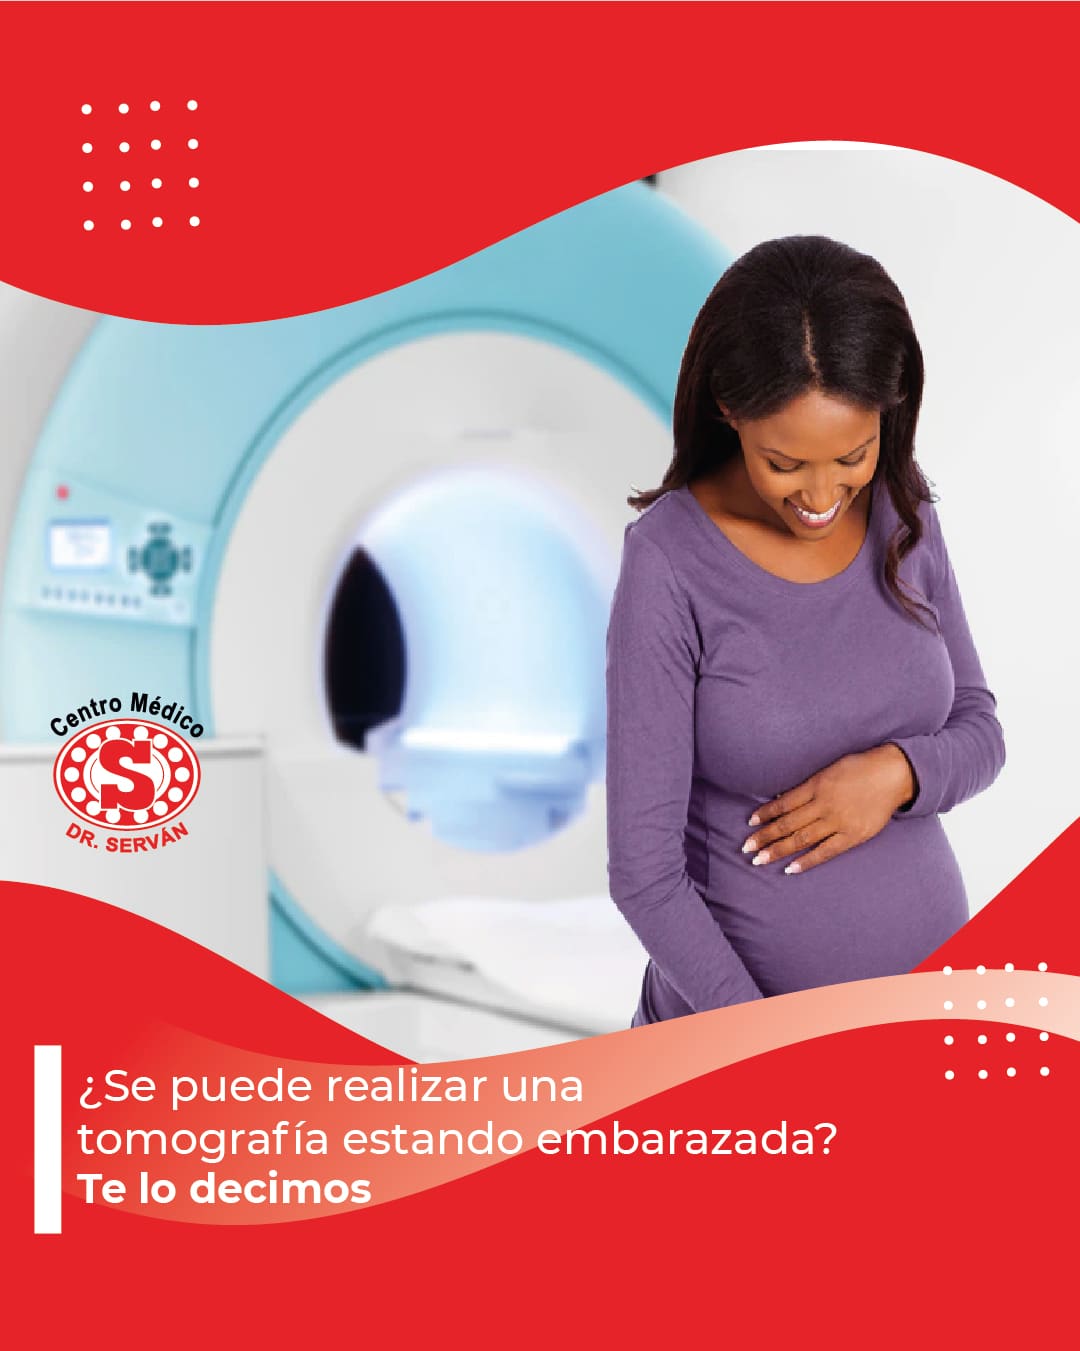 Tomografía durante el embarazada